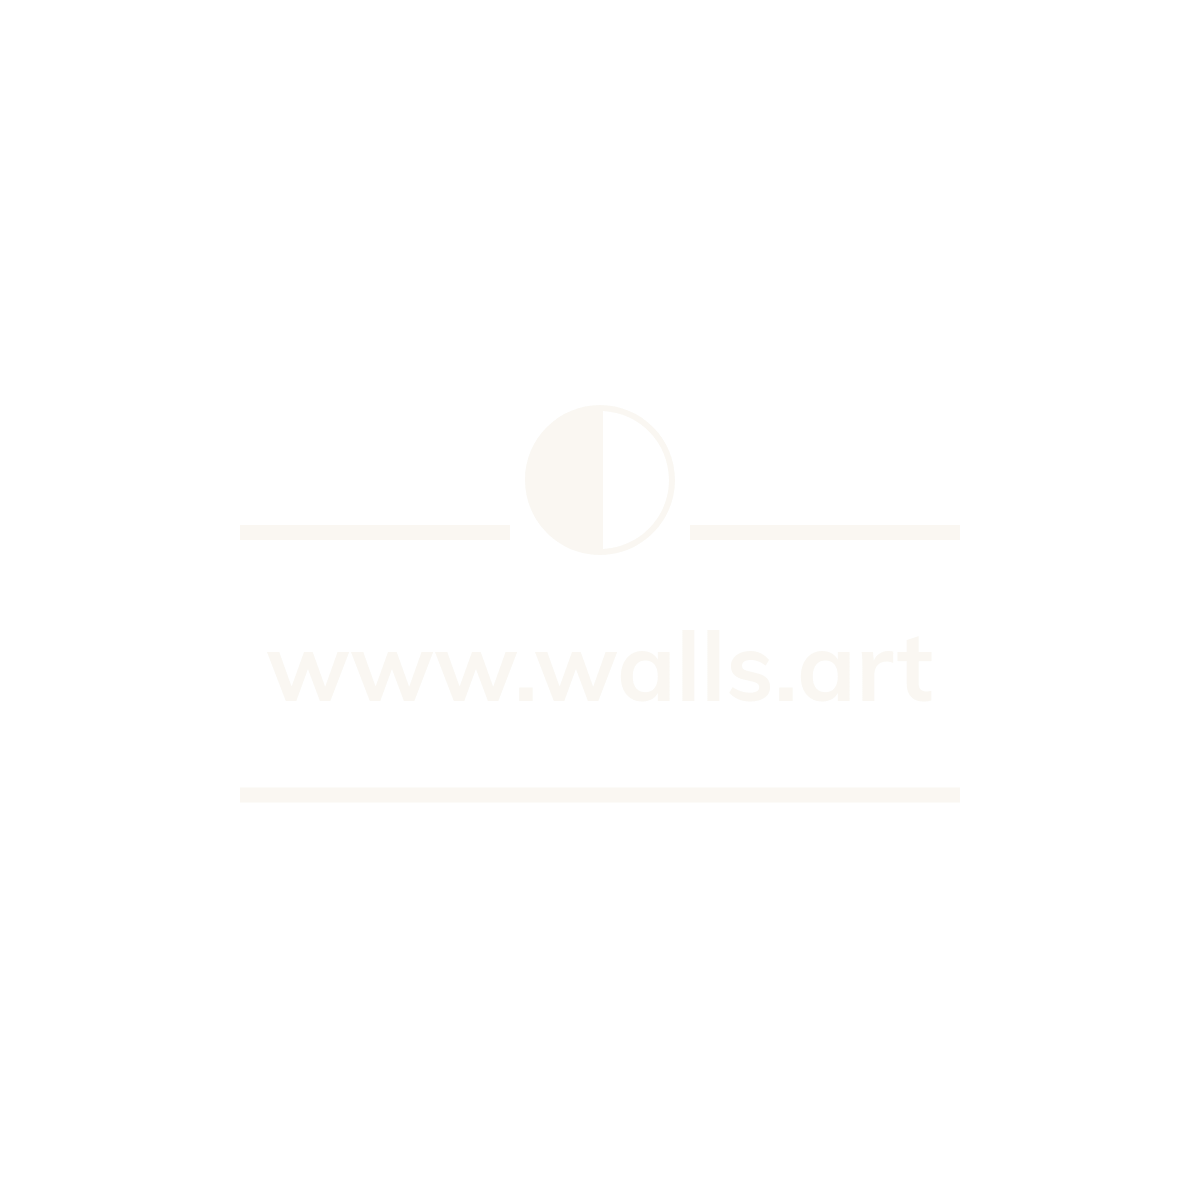 www.walls.art